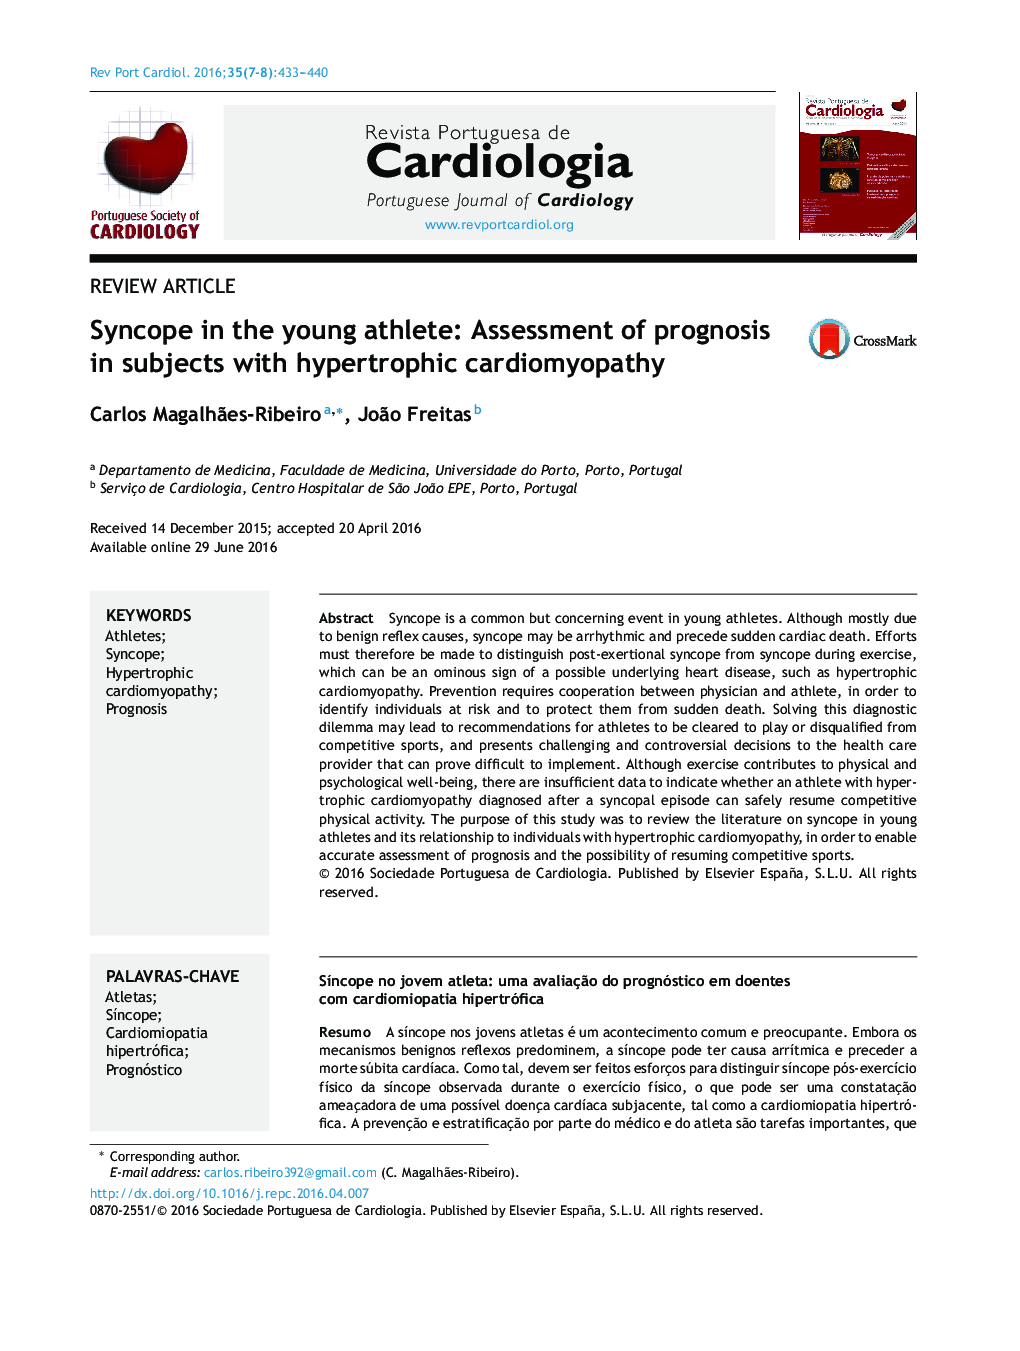 سنکوپ در ورزشکار جوان: ارزیابی پیش بینی در افراد مبتلا به کاردیومیوپاتی هیپرتروفیک